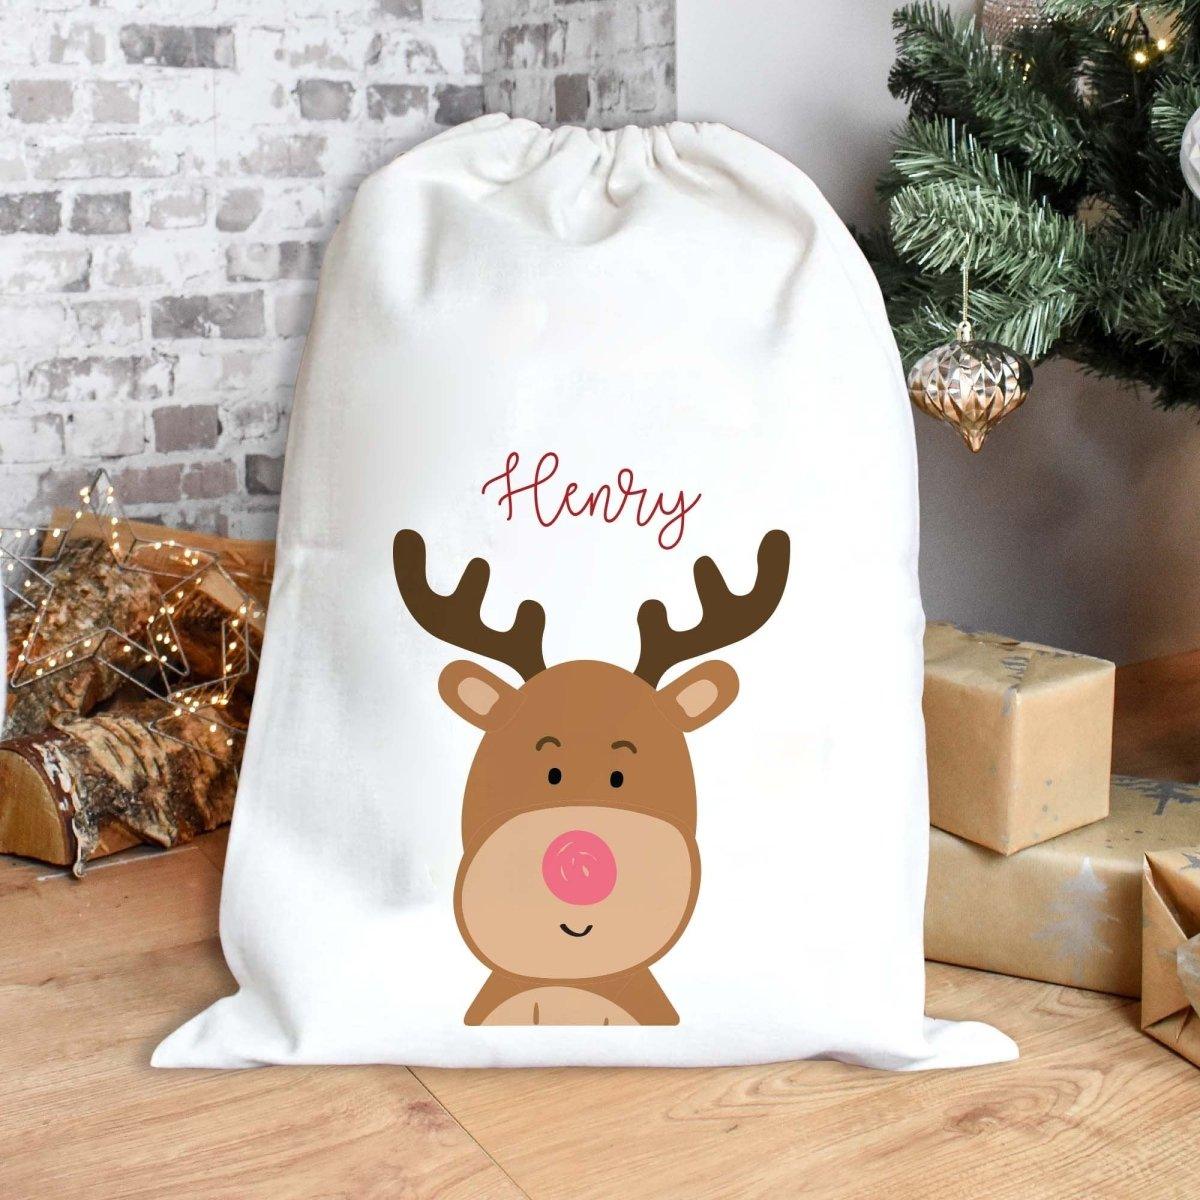 Personalised Christmas Sack, Reindeer Christmas Sack, Kids Christmas Sack, Christmas Santa Sack, Reindeer Gift Bag, Christmas Present Sack, - Amy Lucy